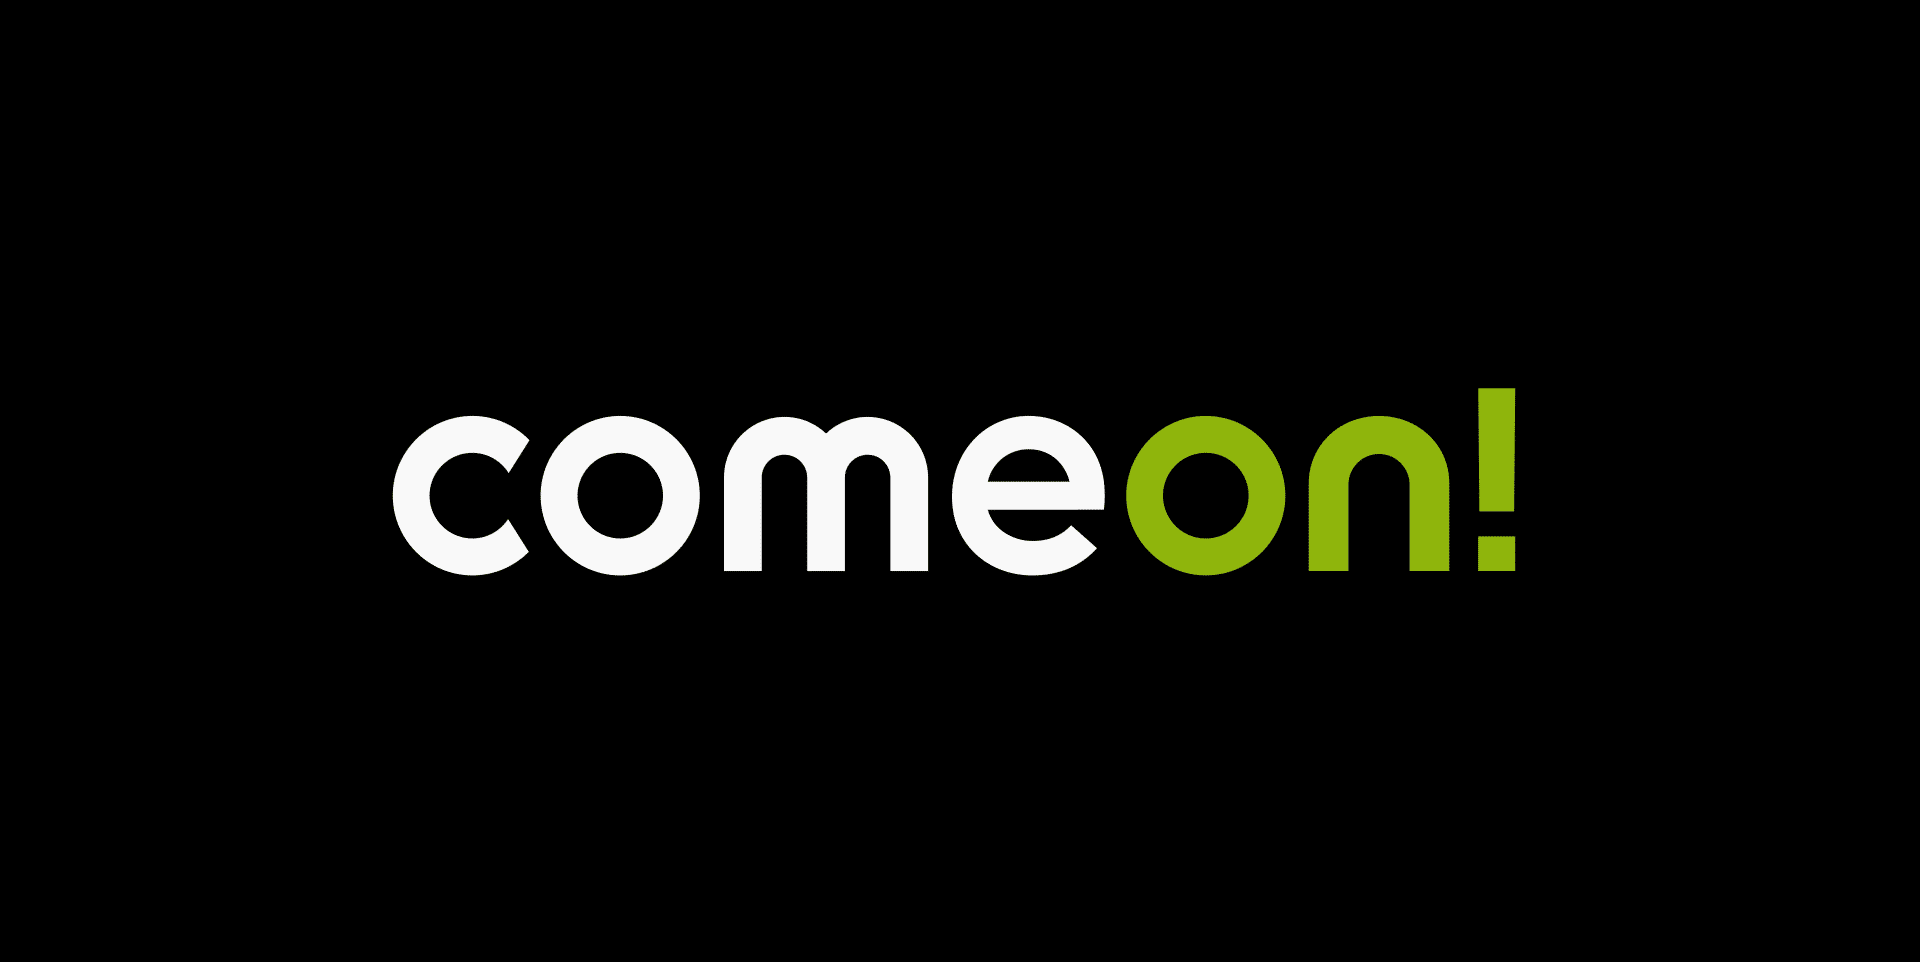 Comeon Casino logo